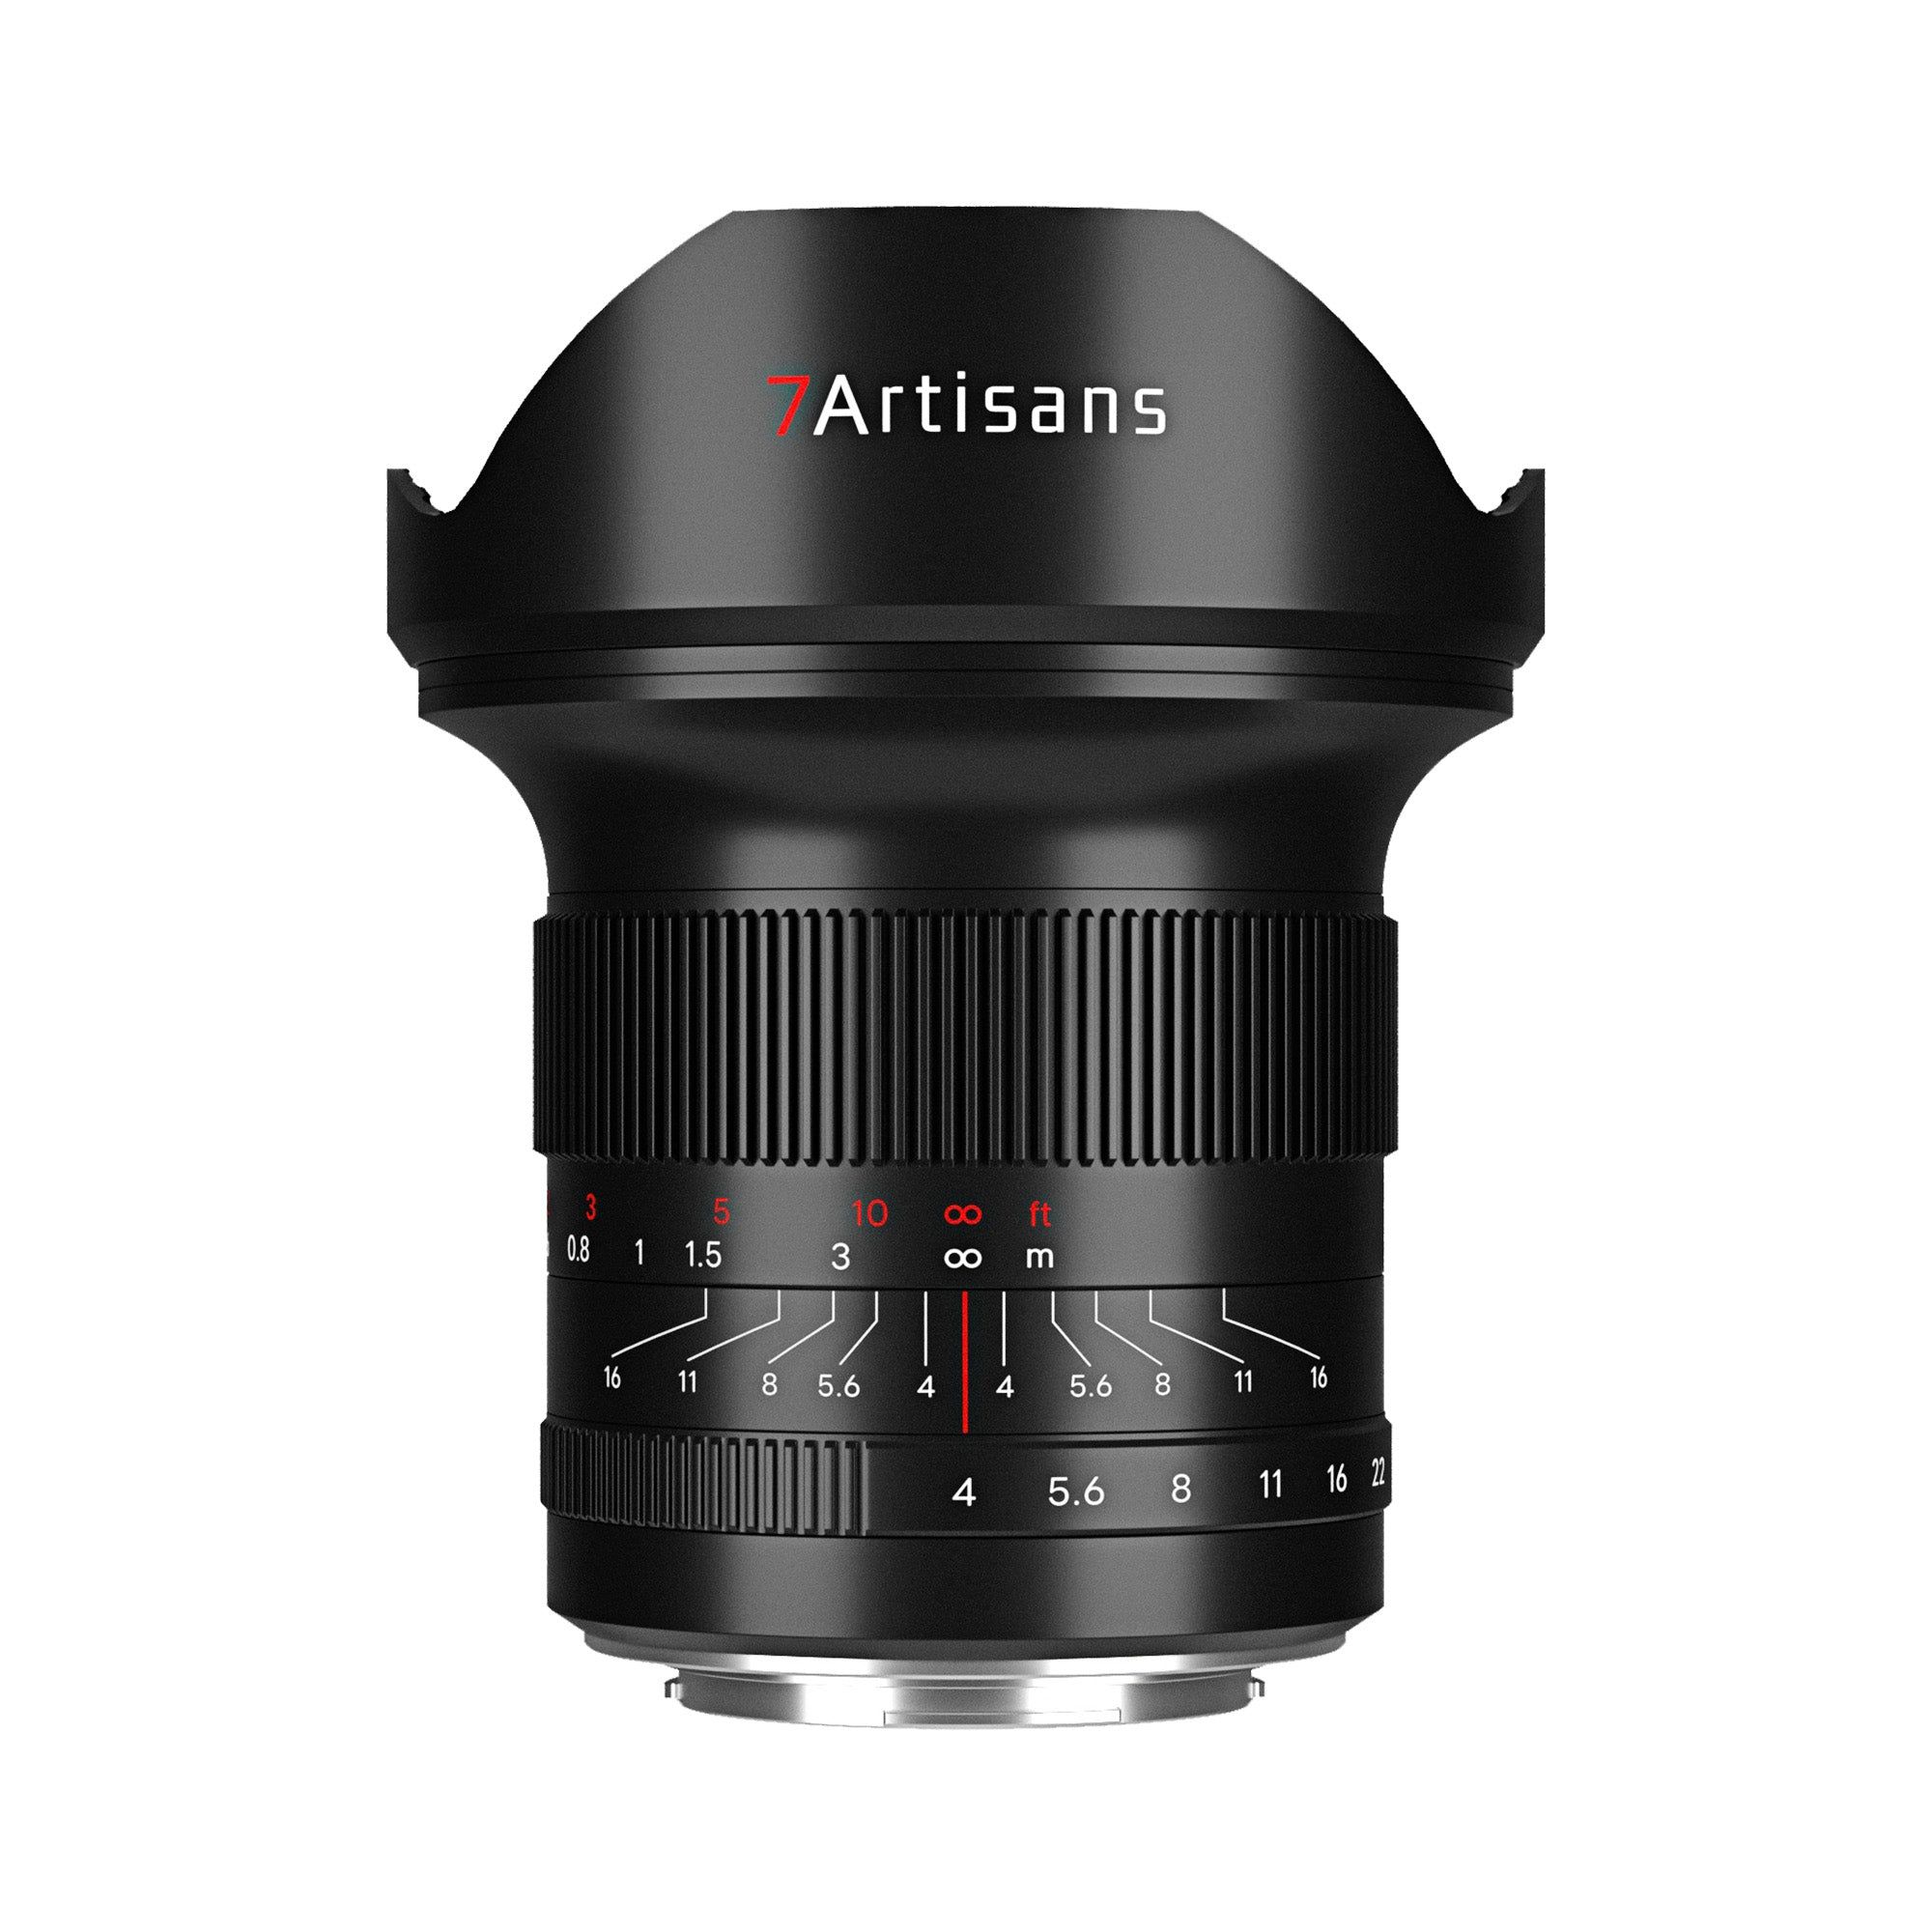 7artisans 15mm f/4 Full-frame Lens for Nikon Z